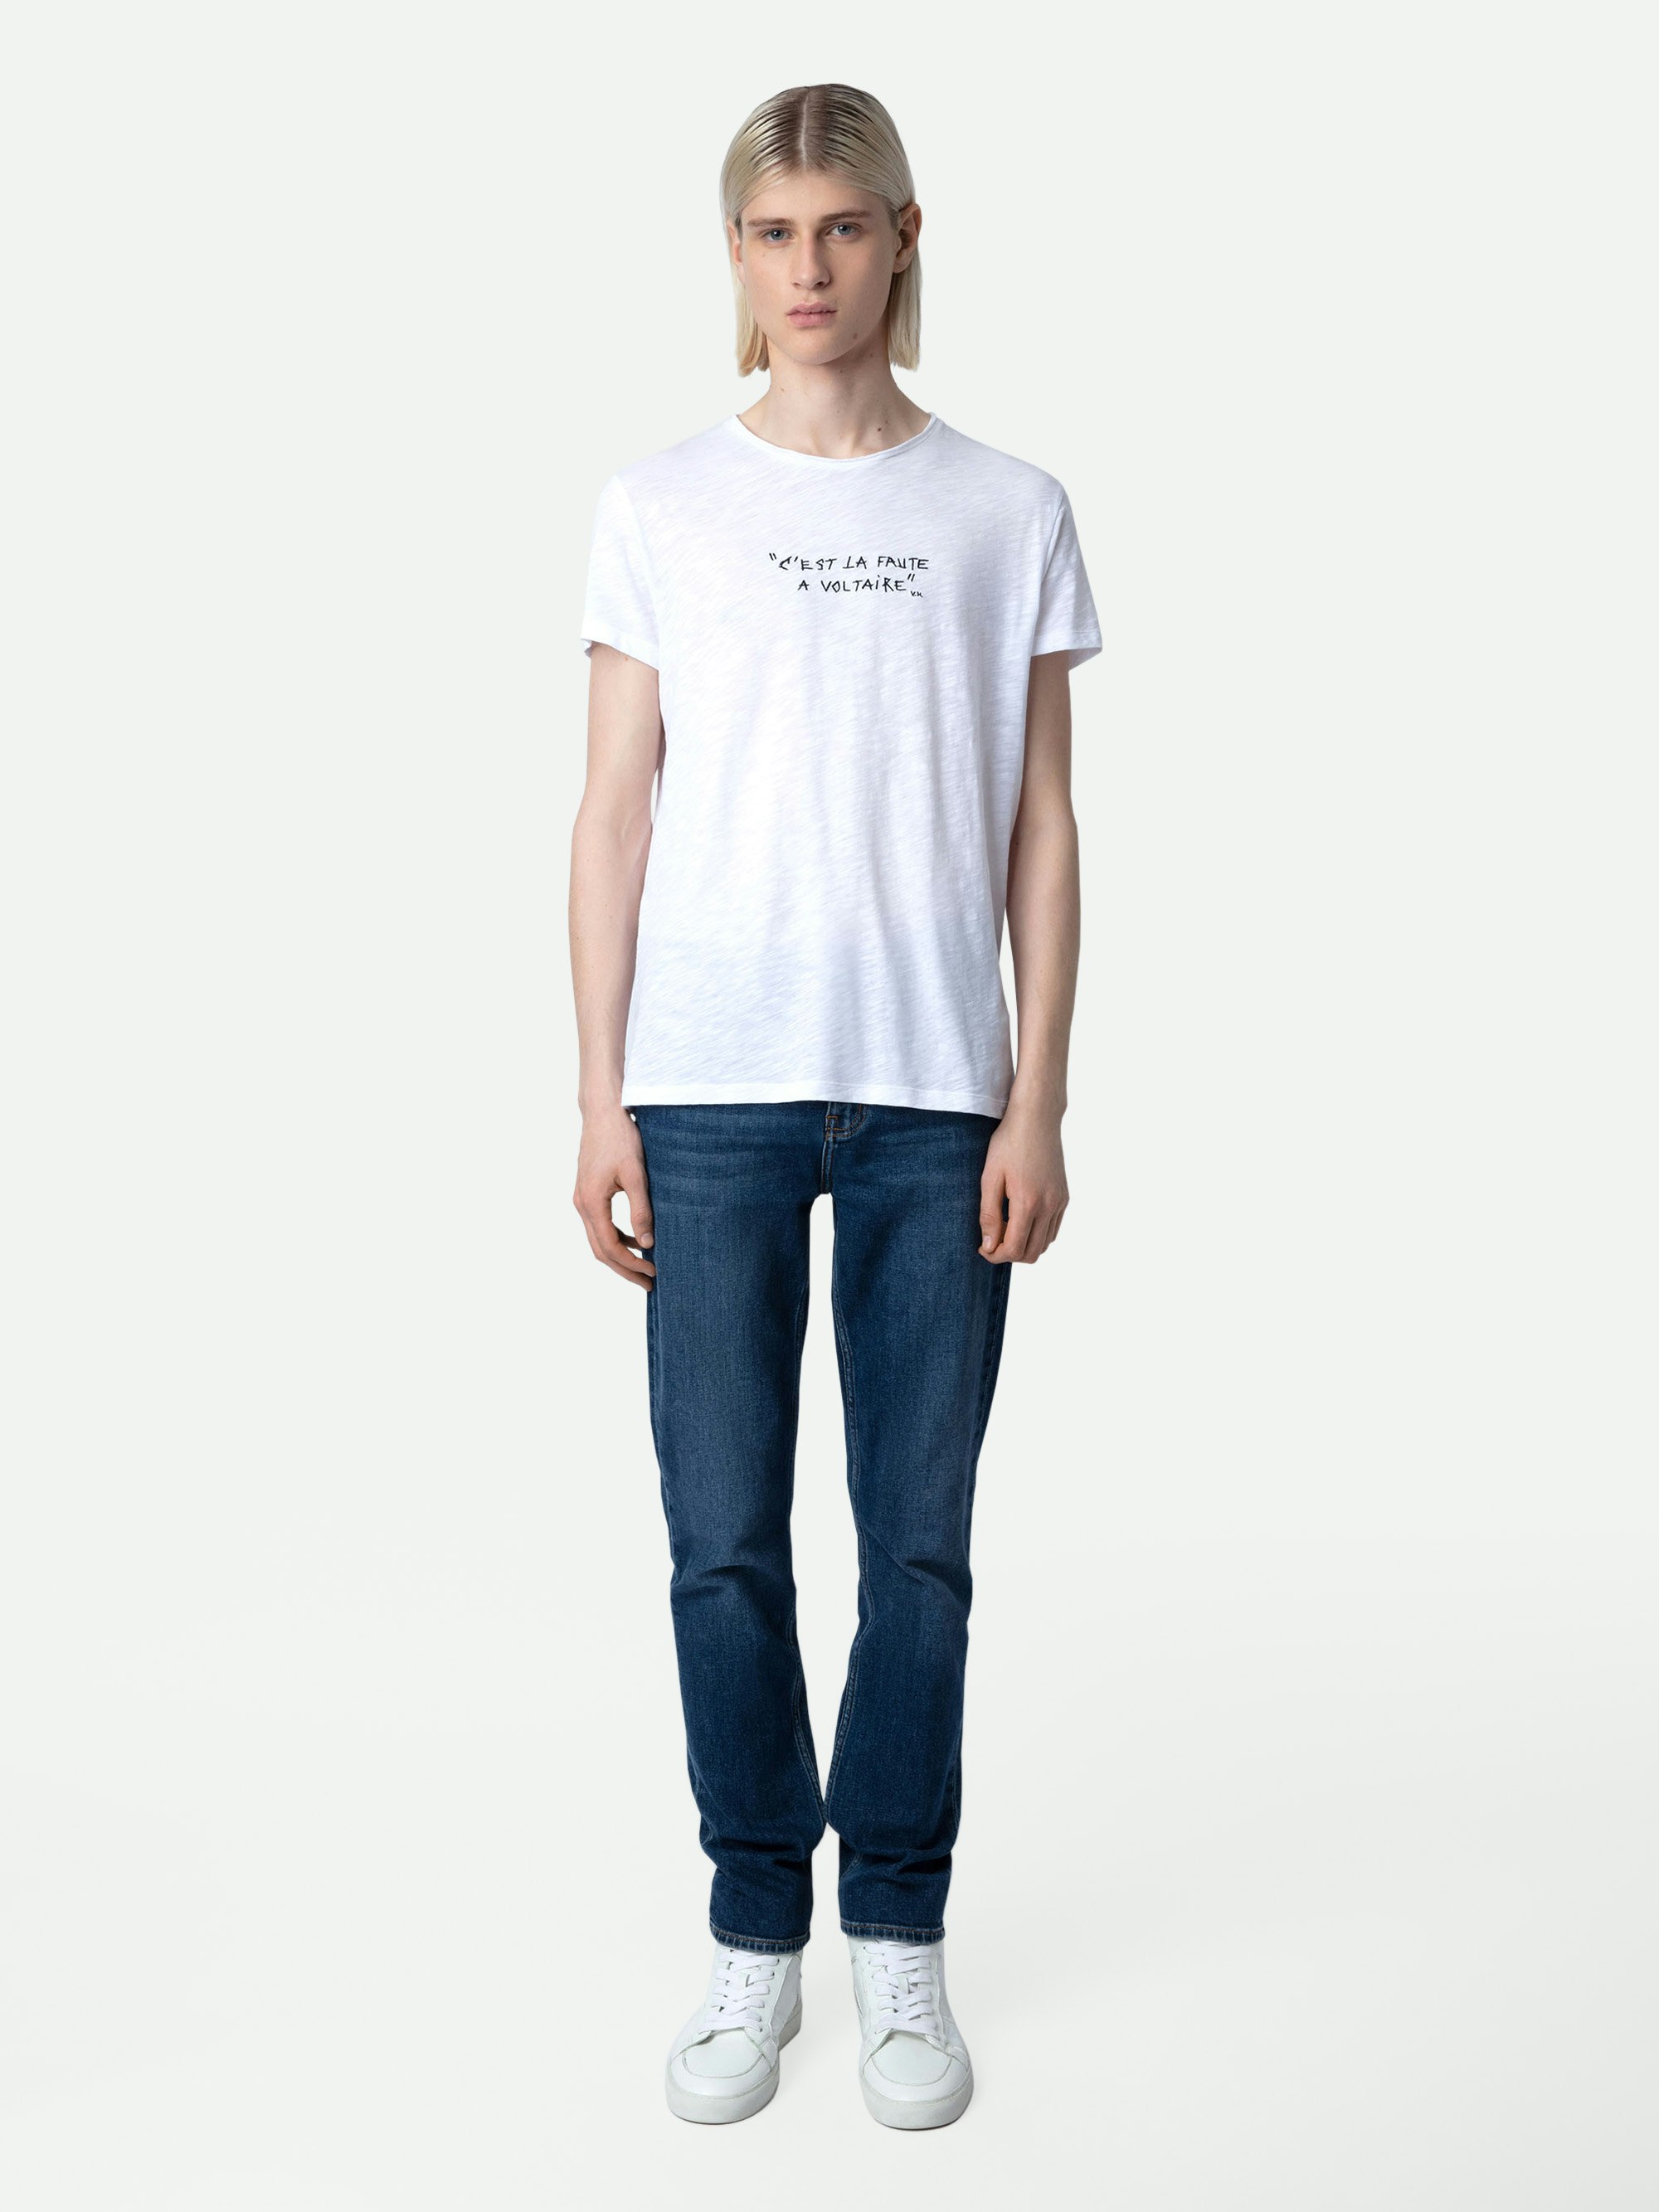 T-Shirt Toby Geflammt - Weißes Herren-T-Shirt aus geflammter Baumwolle mit dem Schriftzug „C'est la faute à Voltaire“.